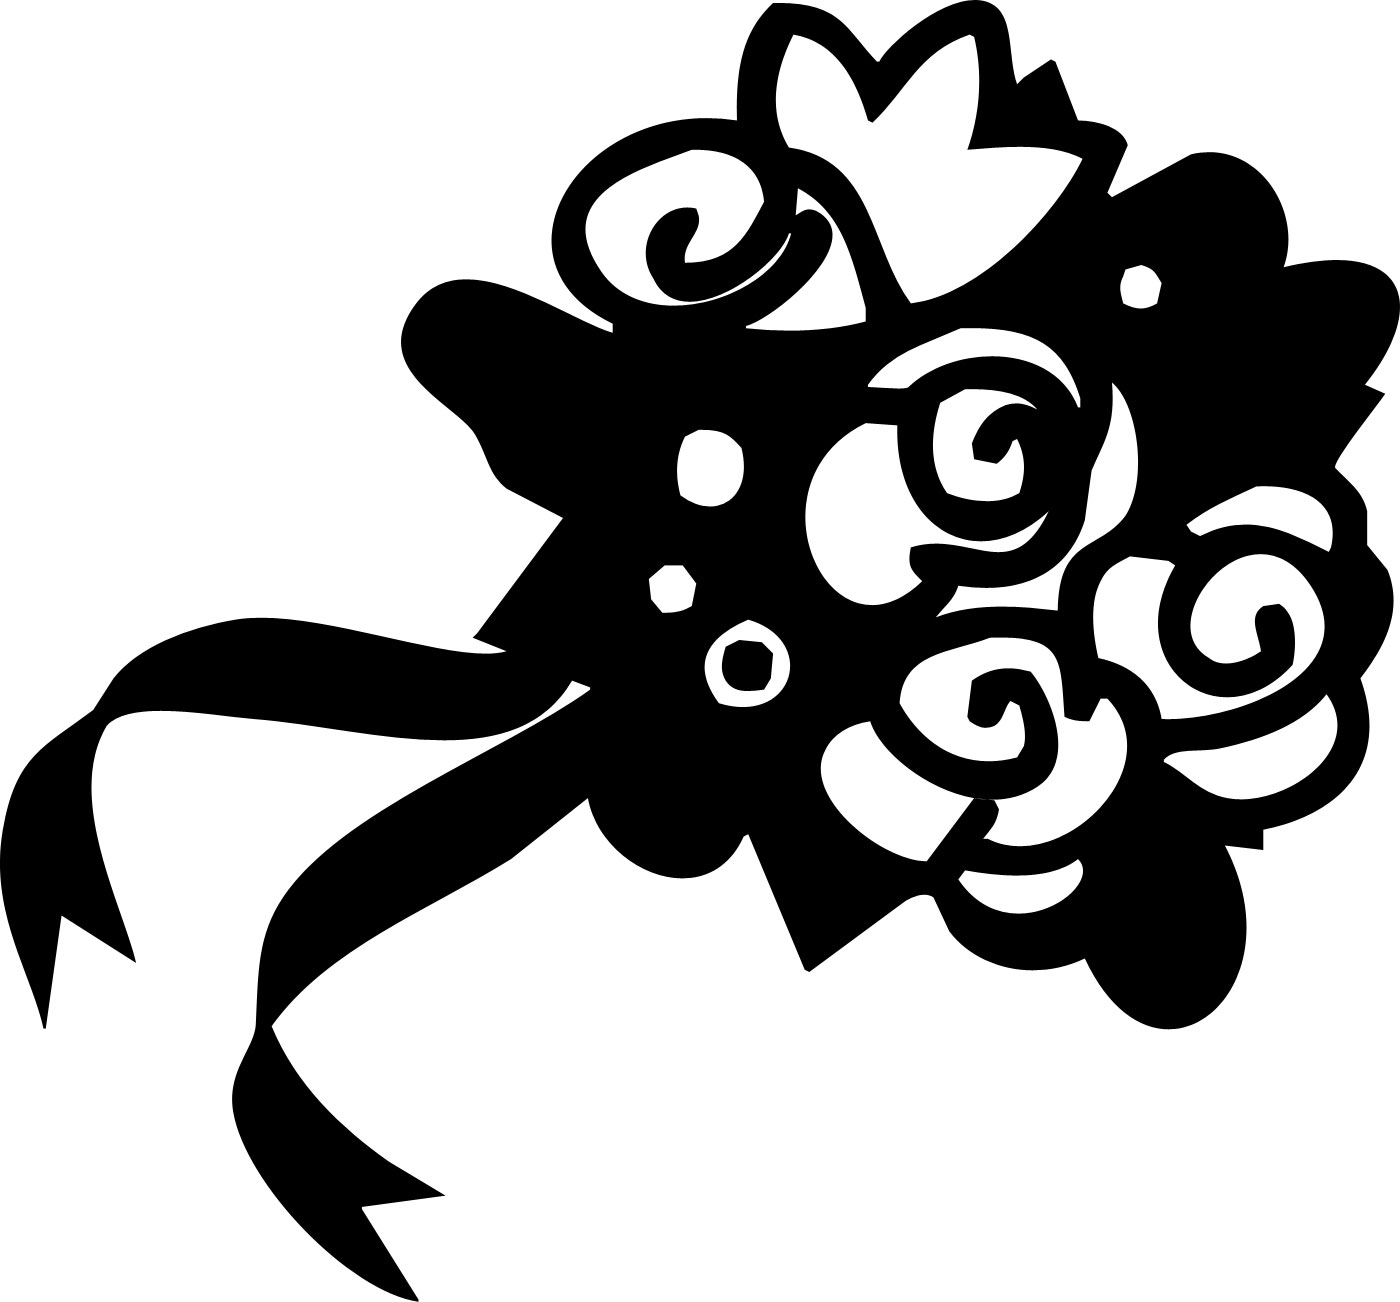 花のイラスト フリー素材 白黒 モノクロno 276 白黒 花束 リボン